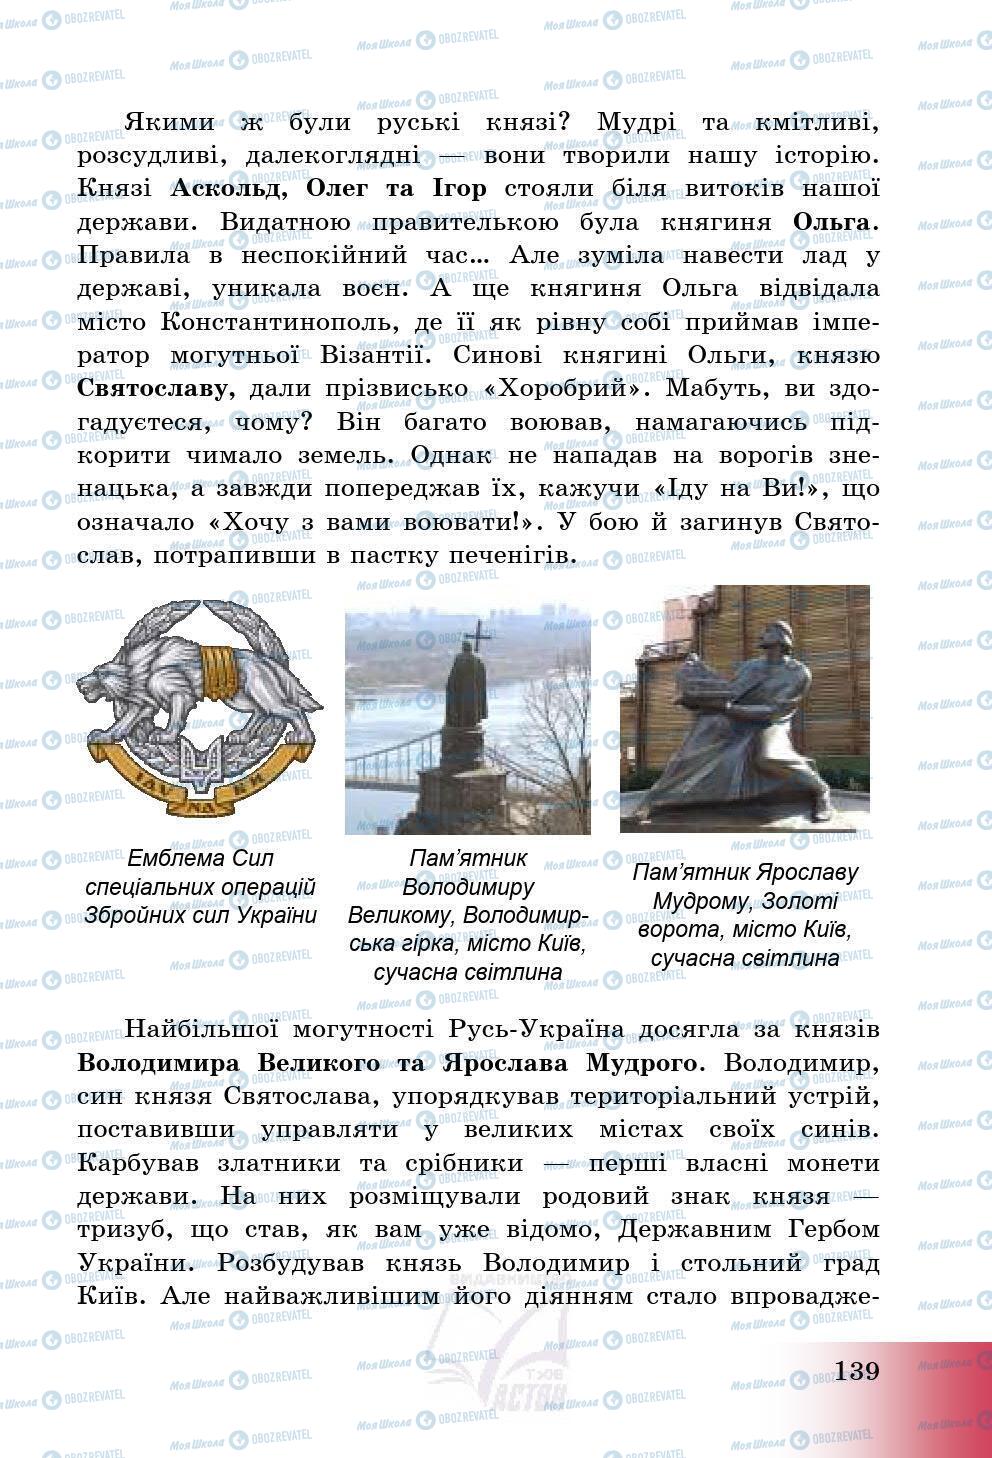 Підручники Історія України 5 клас сторінка 142